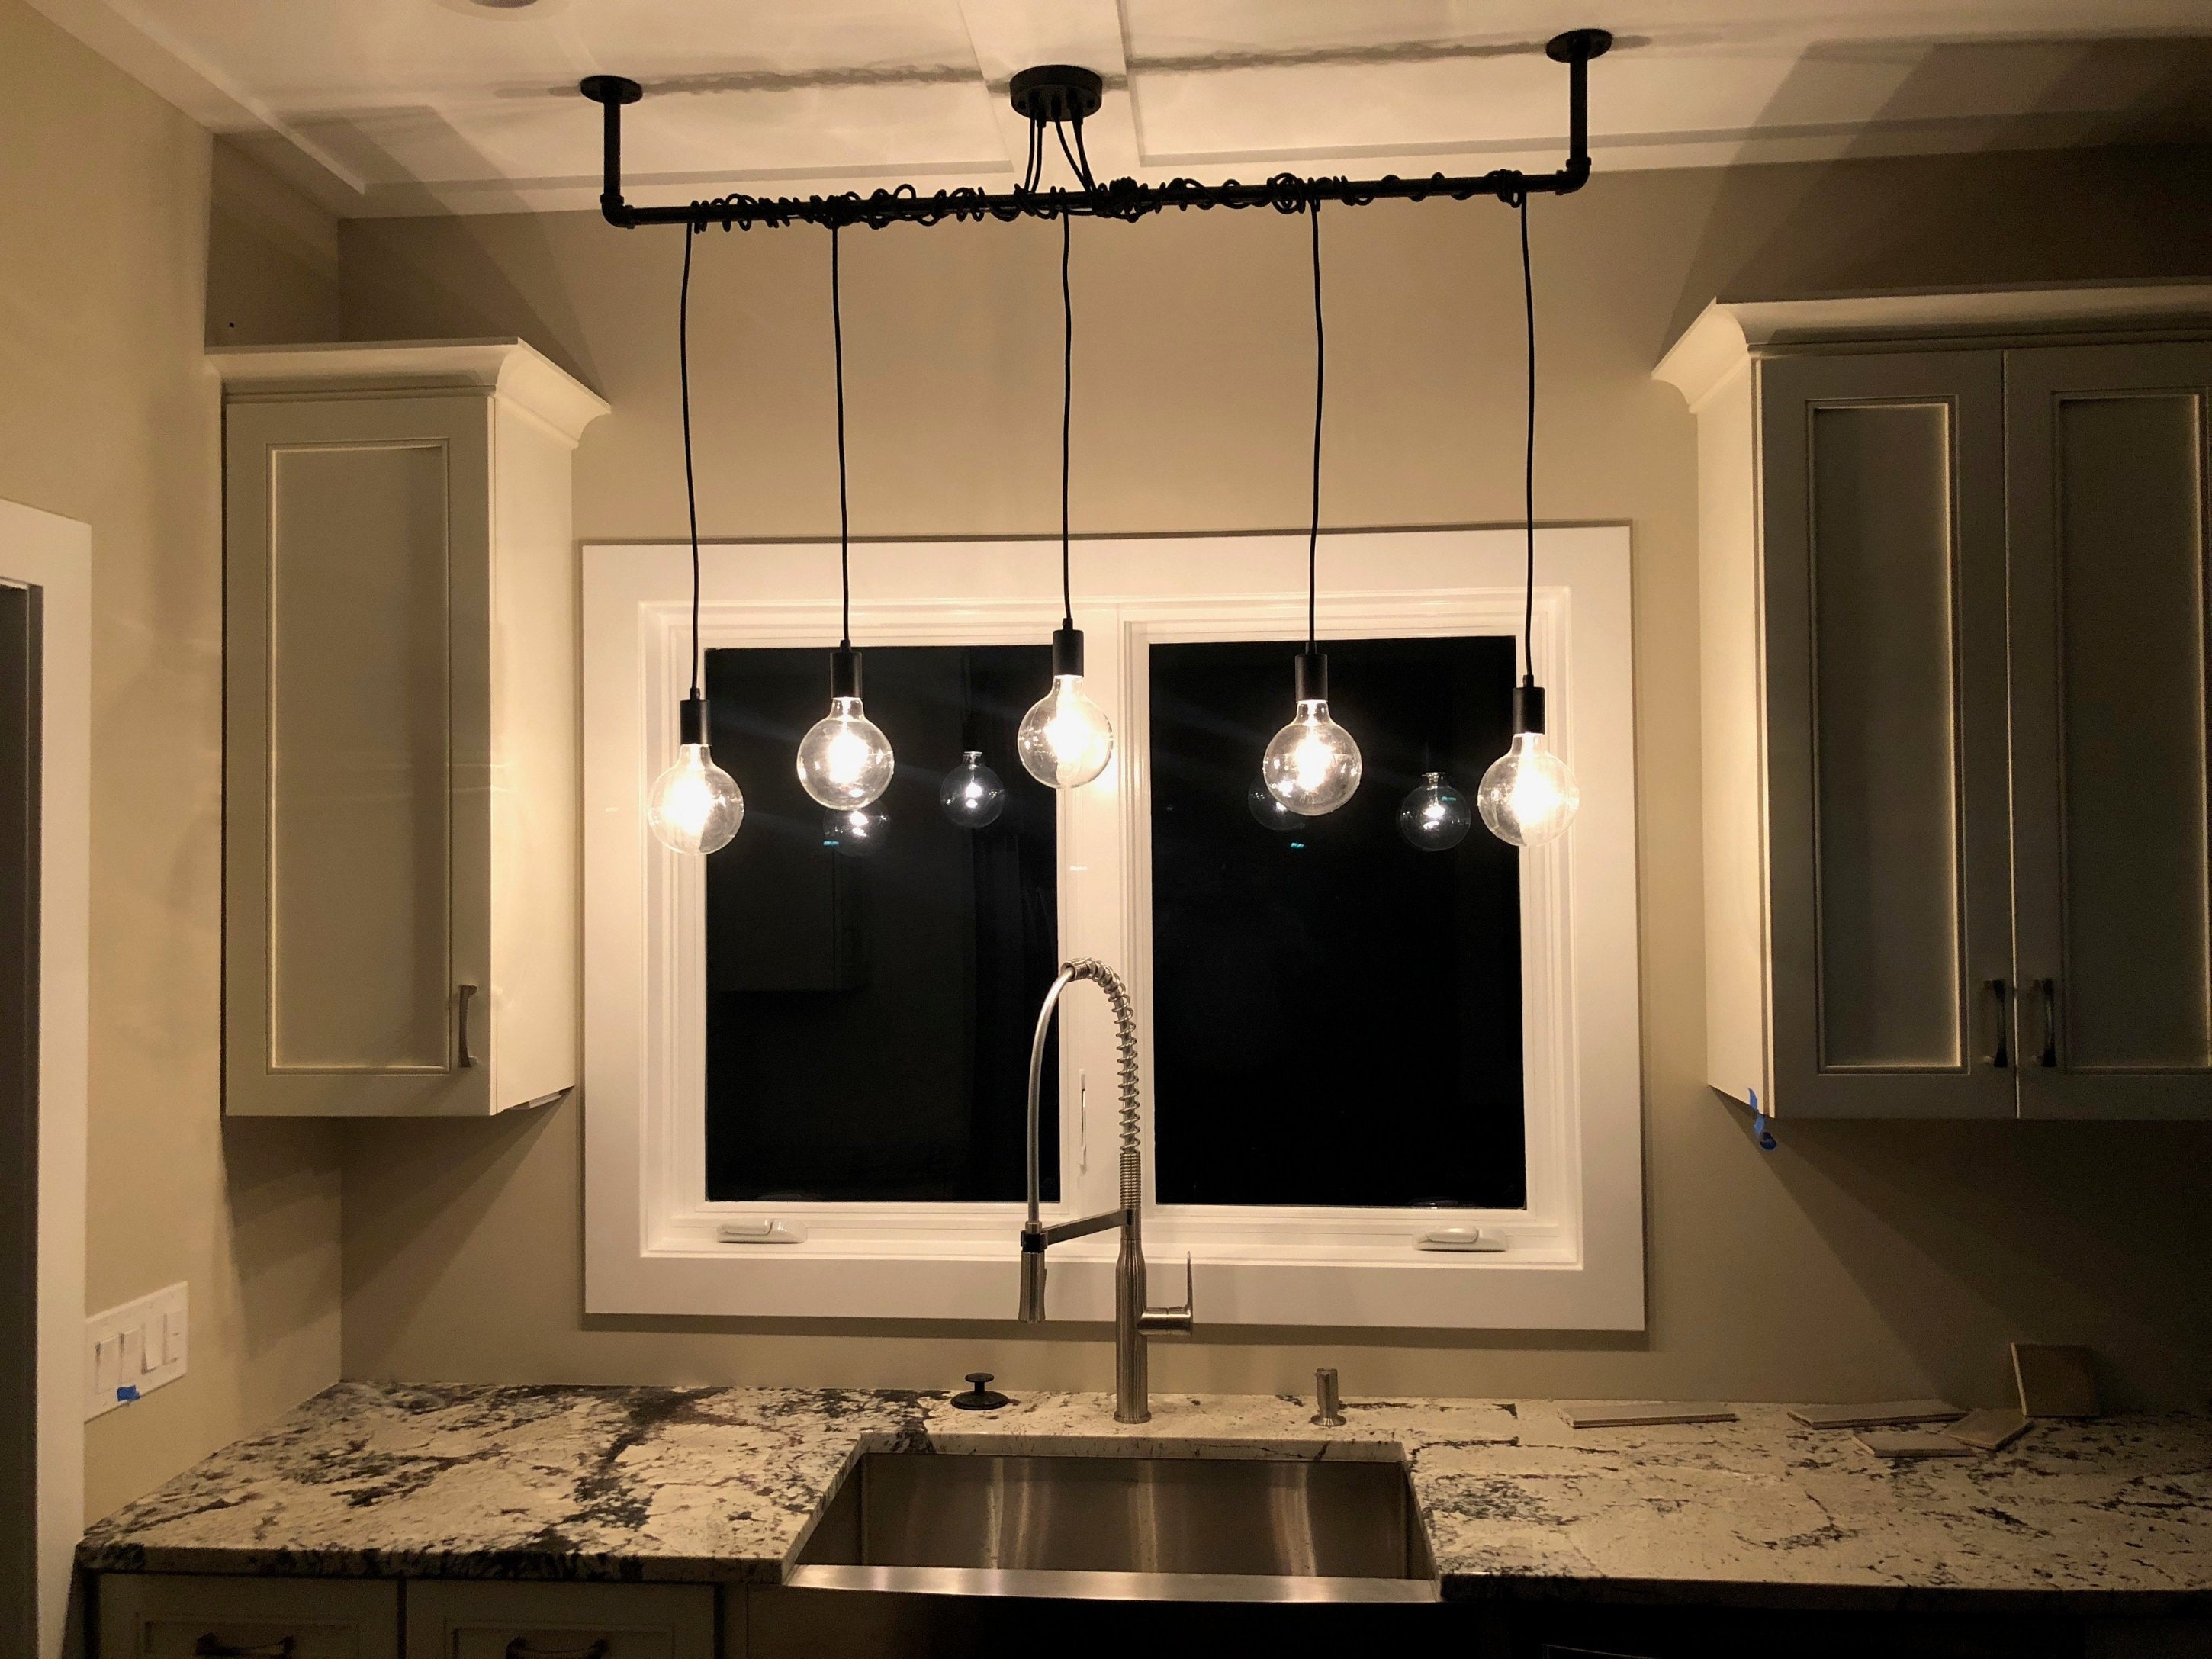 pendant light height above kitchen sink